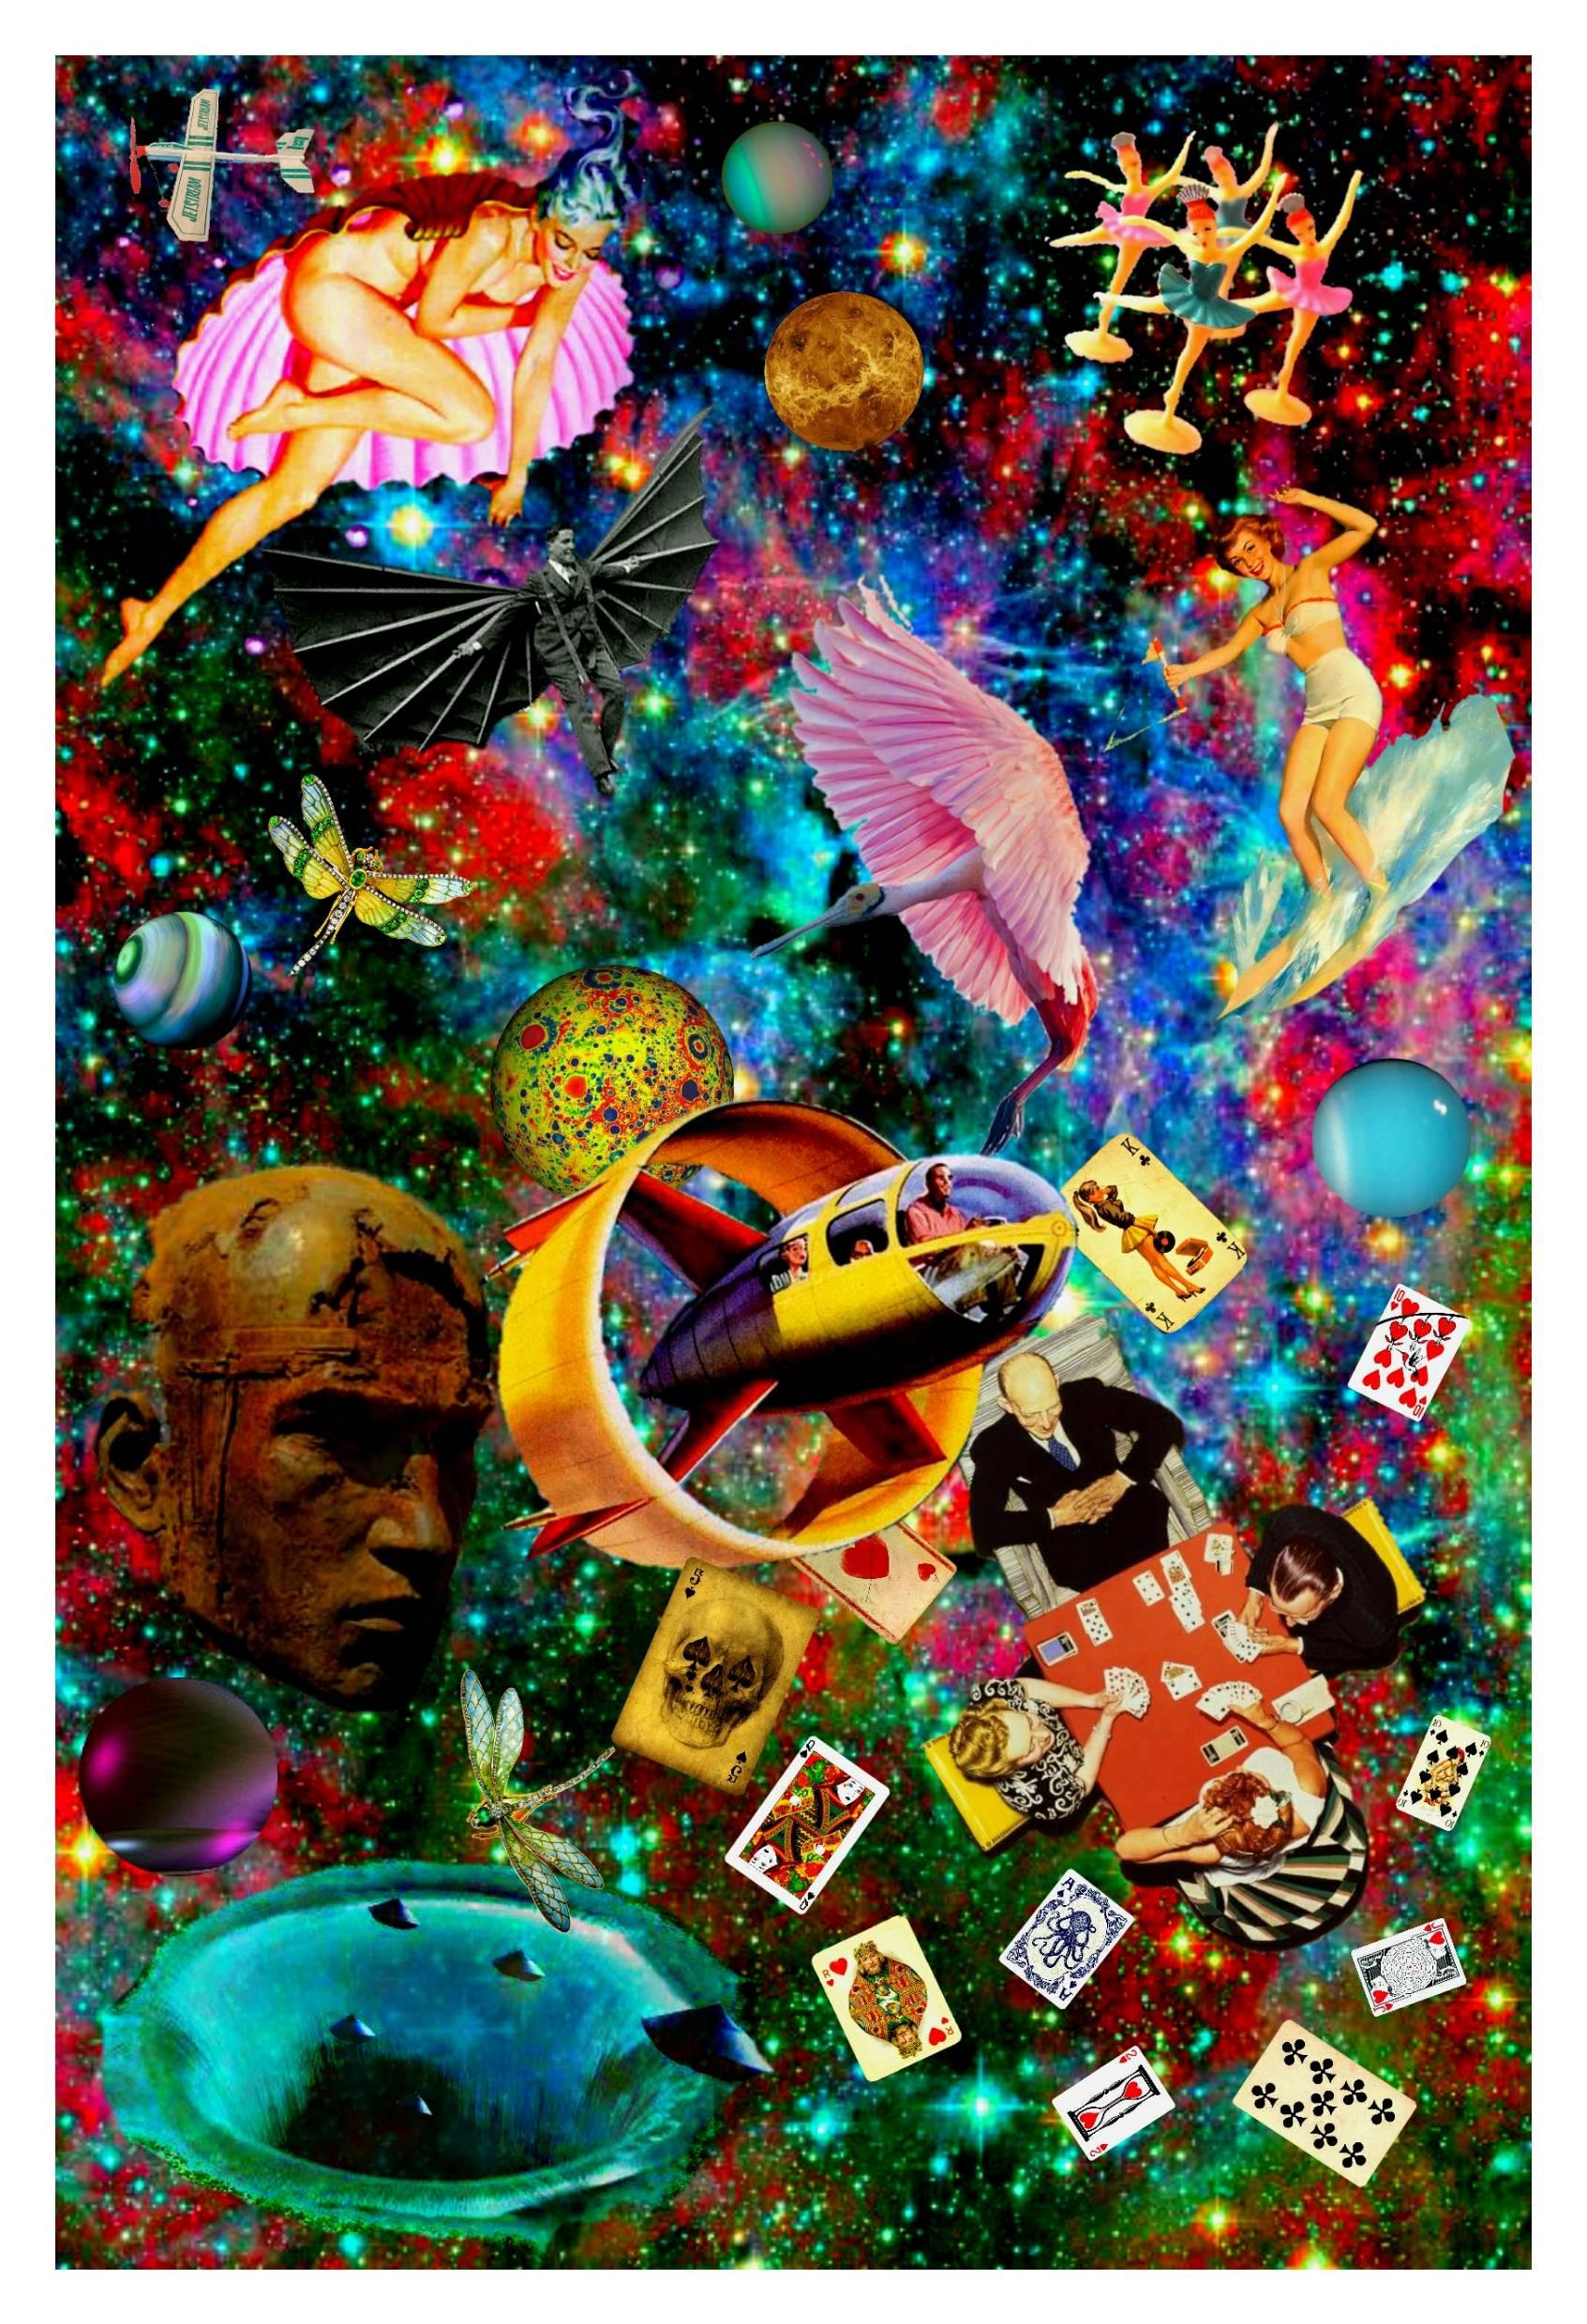 Color Photograph Robert Fleischman - Jeu de cartes à jouer aux cartes